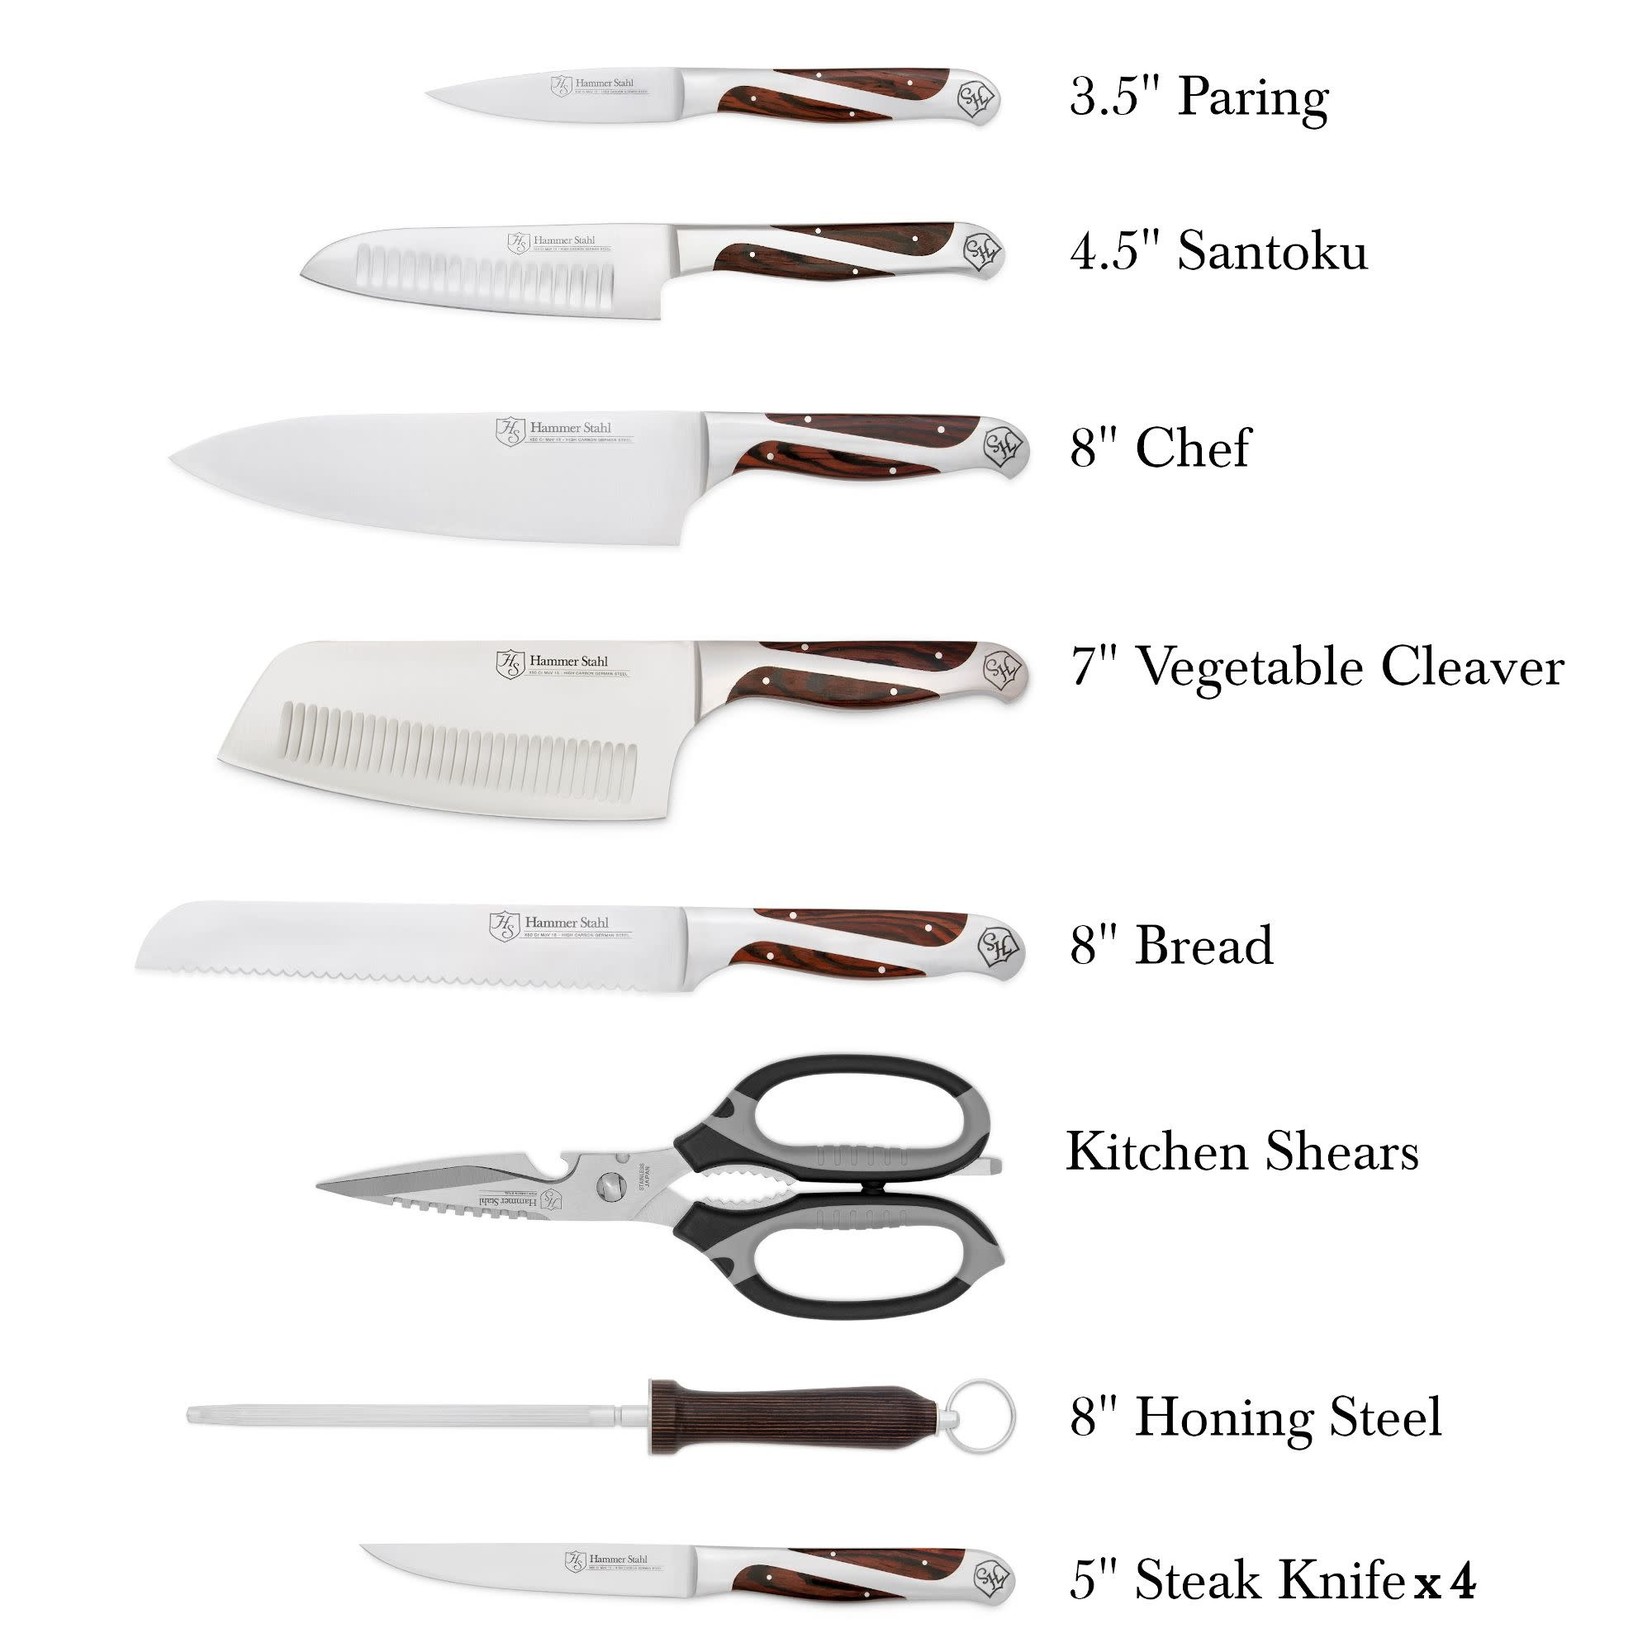 Hammer Stahl 12 Piece Cutlery Set